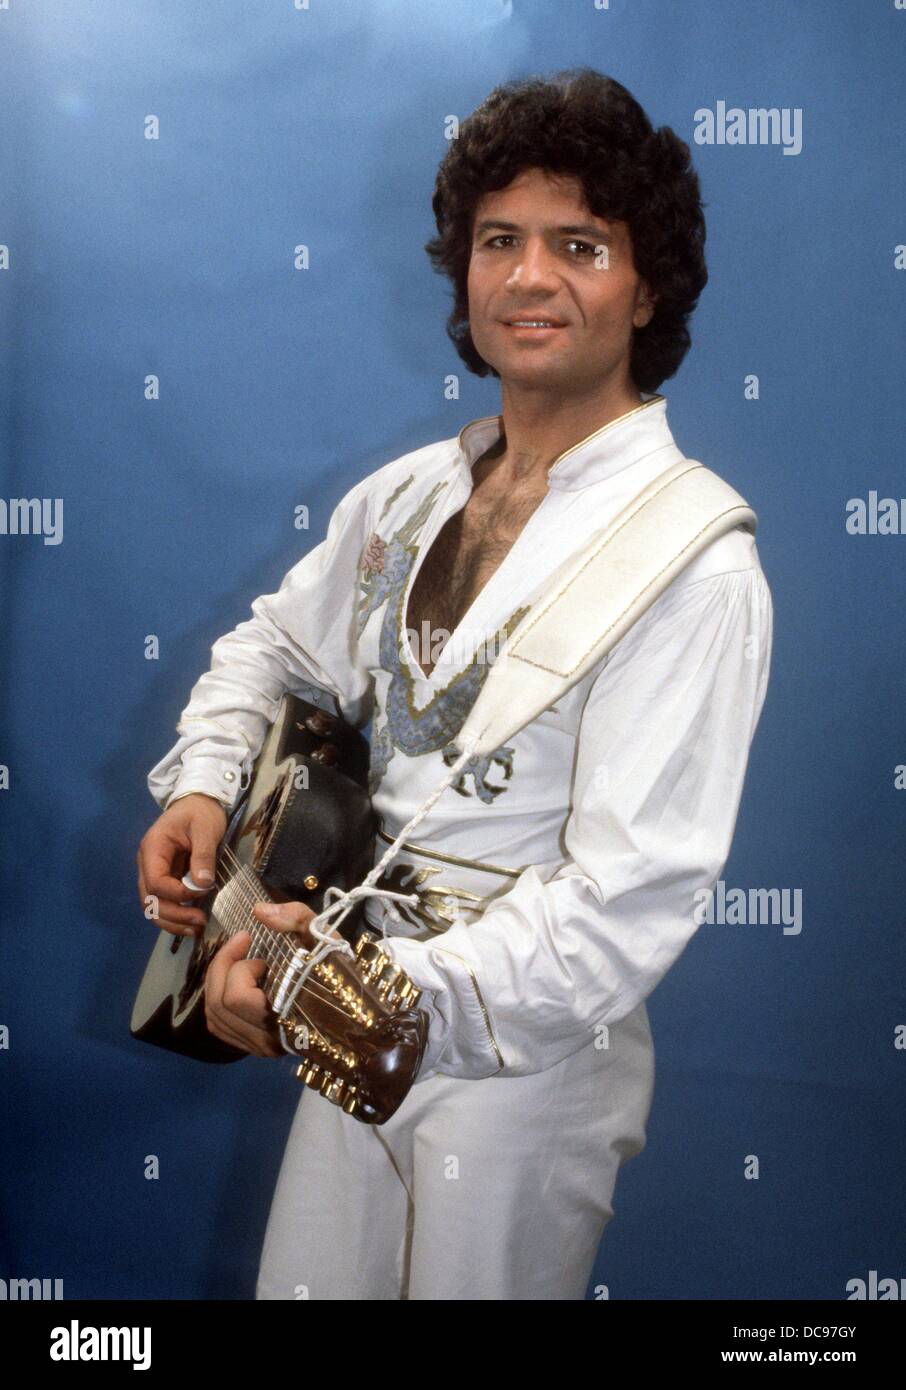 Chanteur, compositeur et artiste du Costa Cordalis pose avec sa guitare en 1981. Banque D'Images